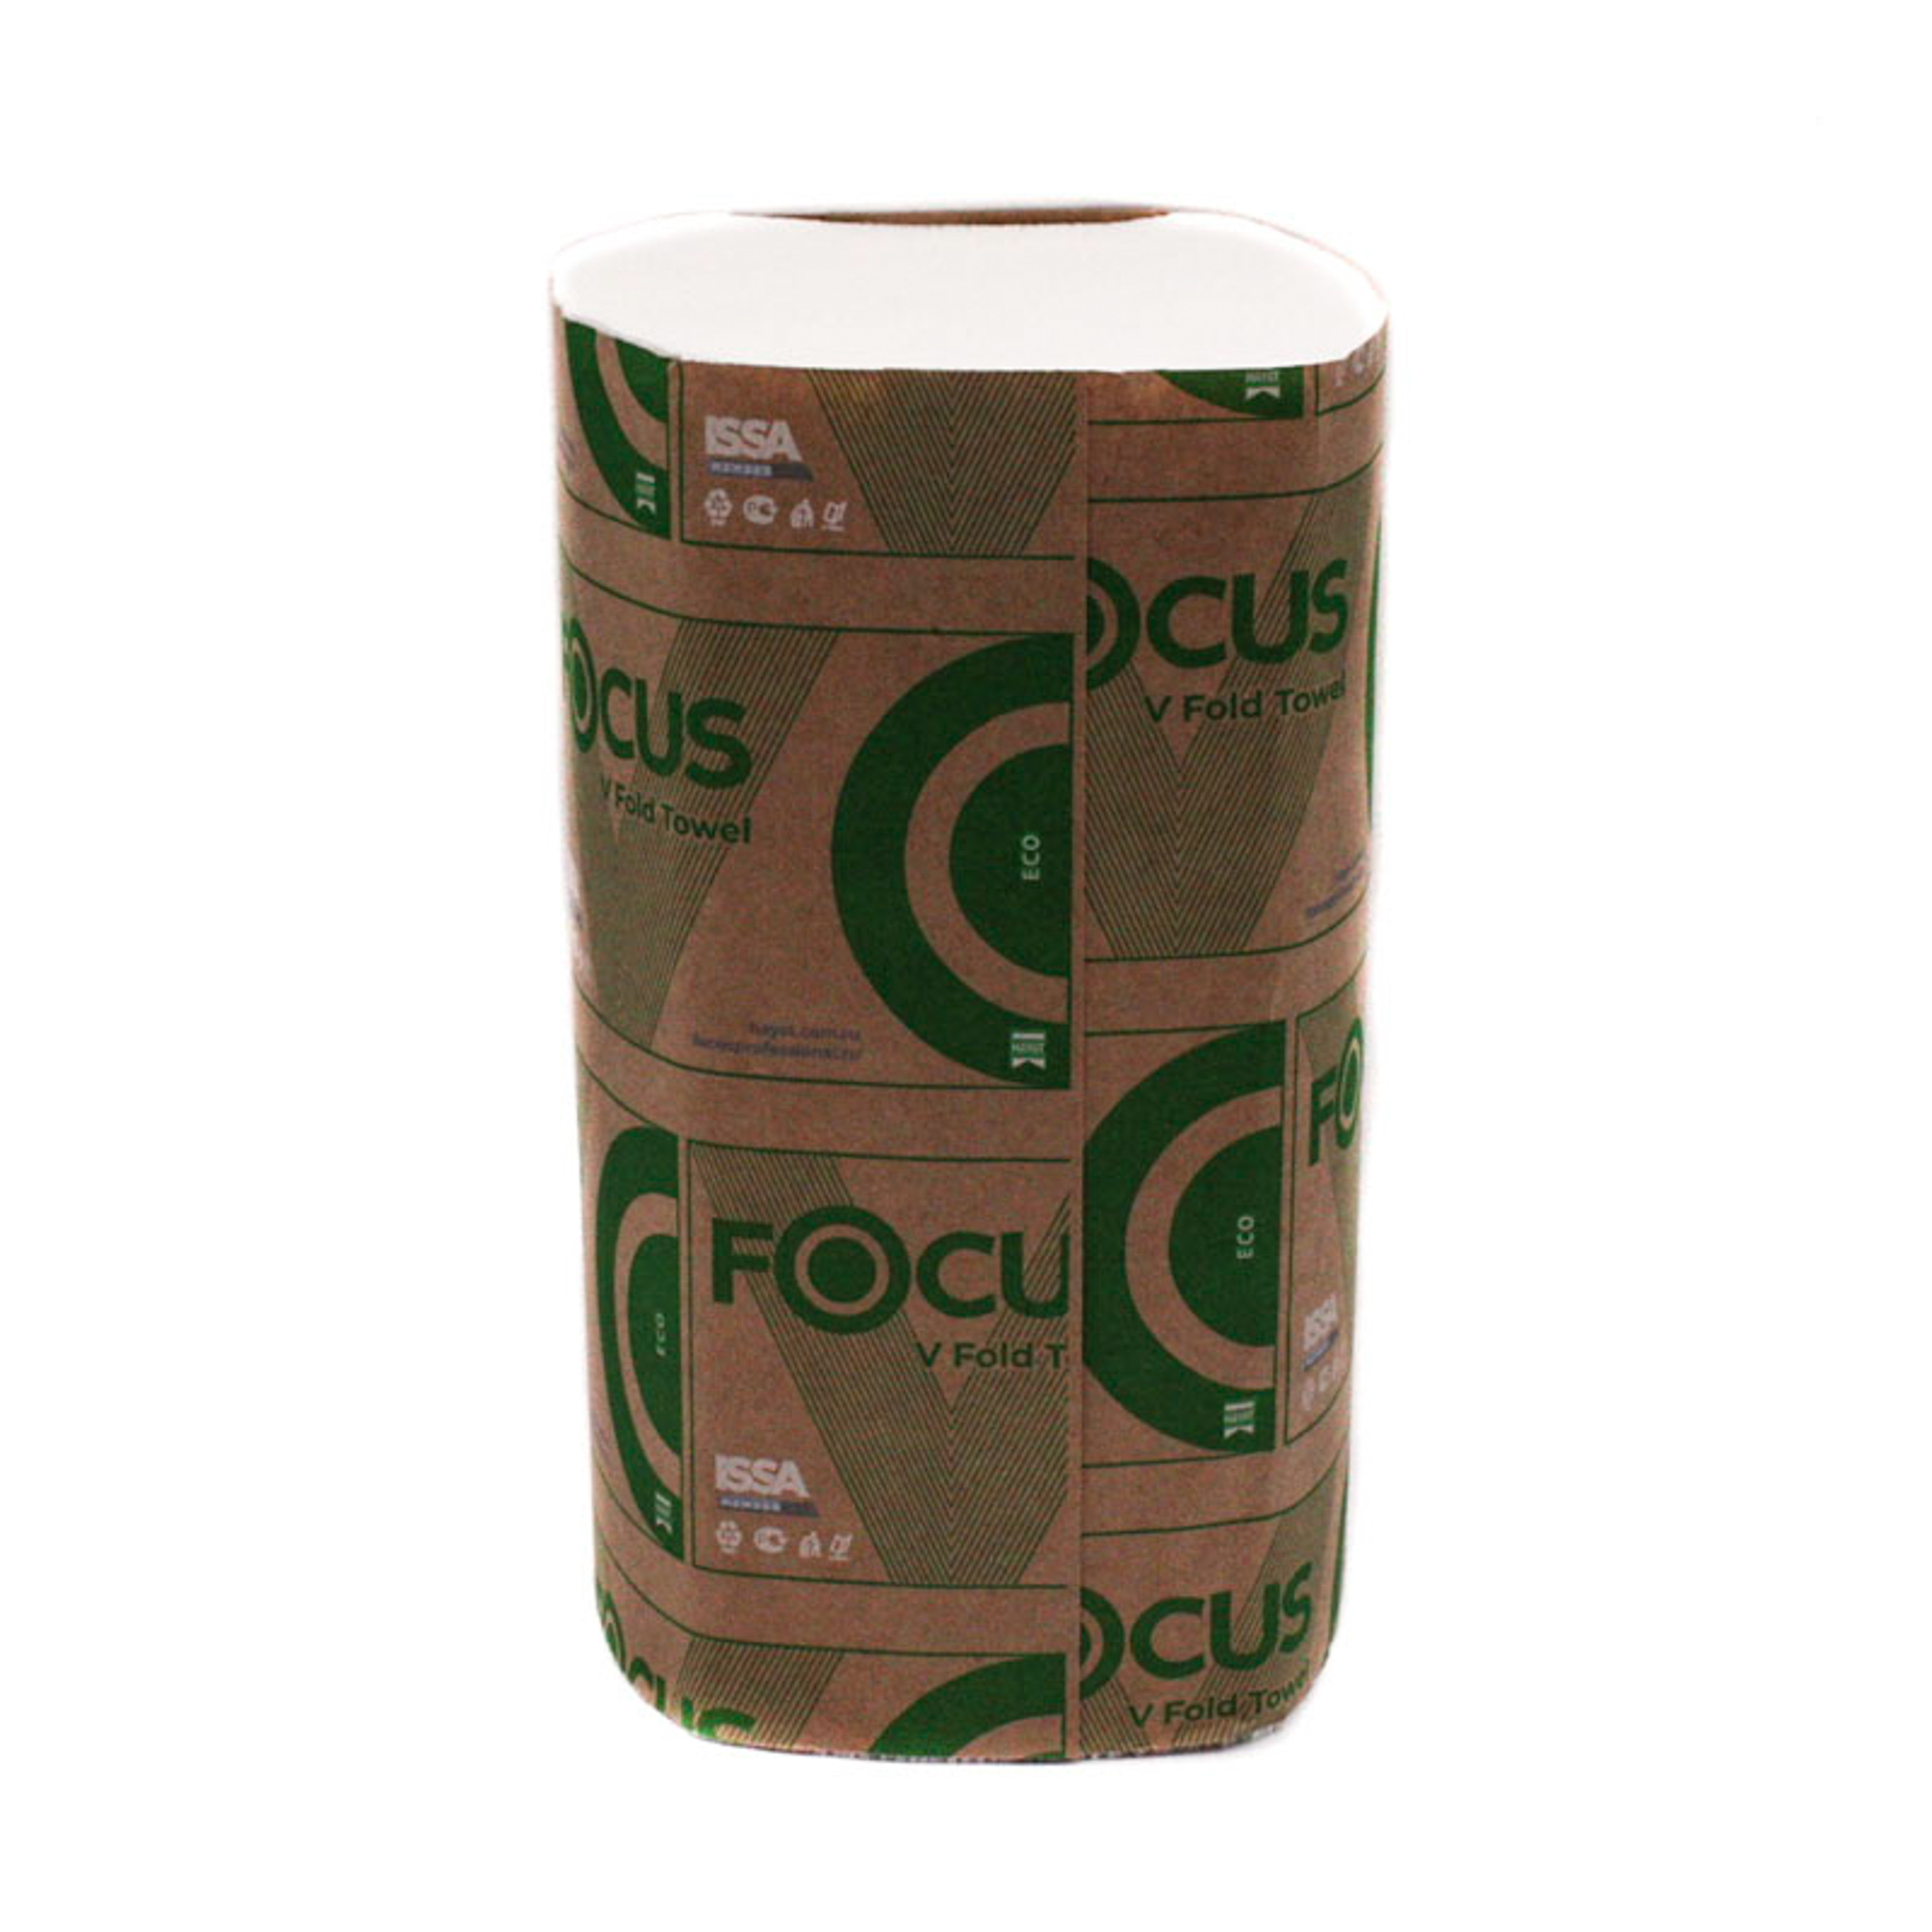 Бумажные полотенца листовые Focus Eco V сложения 1 слойные белые 250 листов (артикул производителя  5083742)